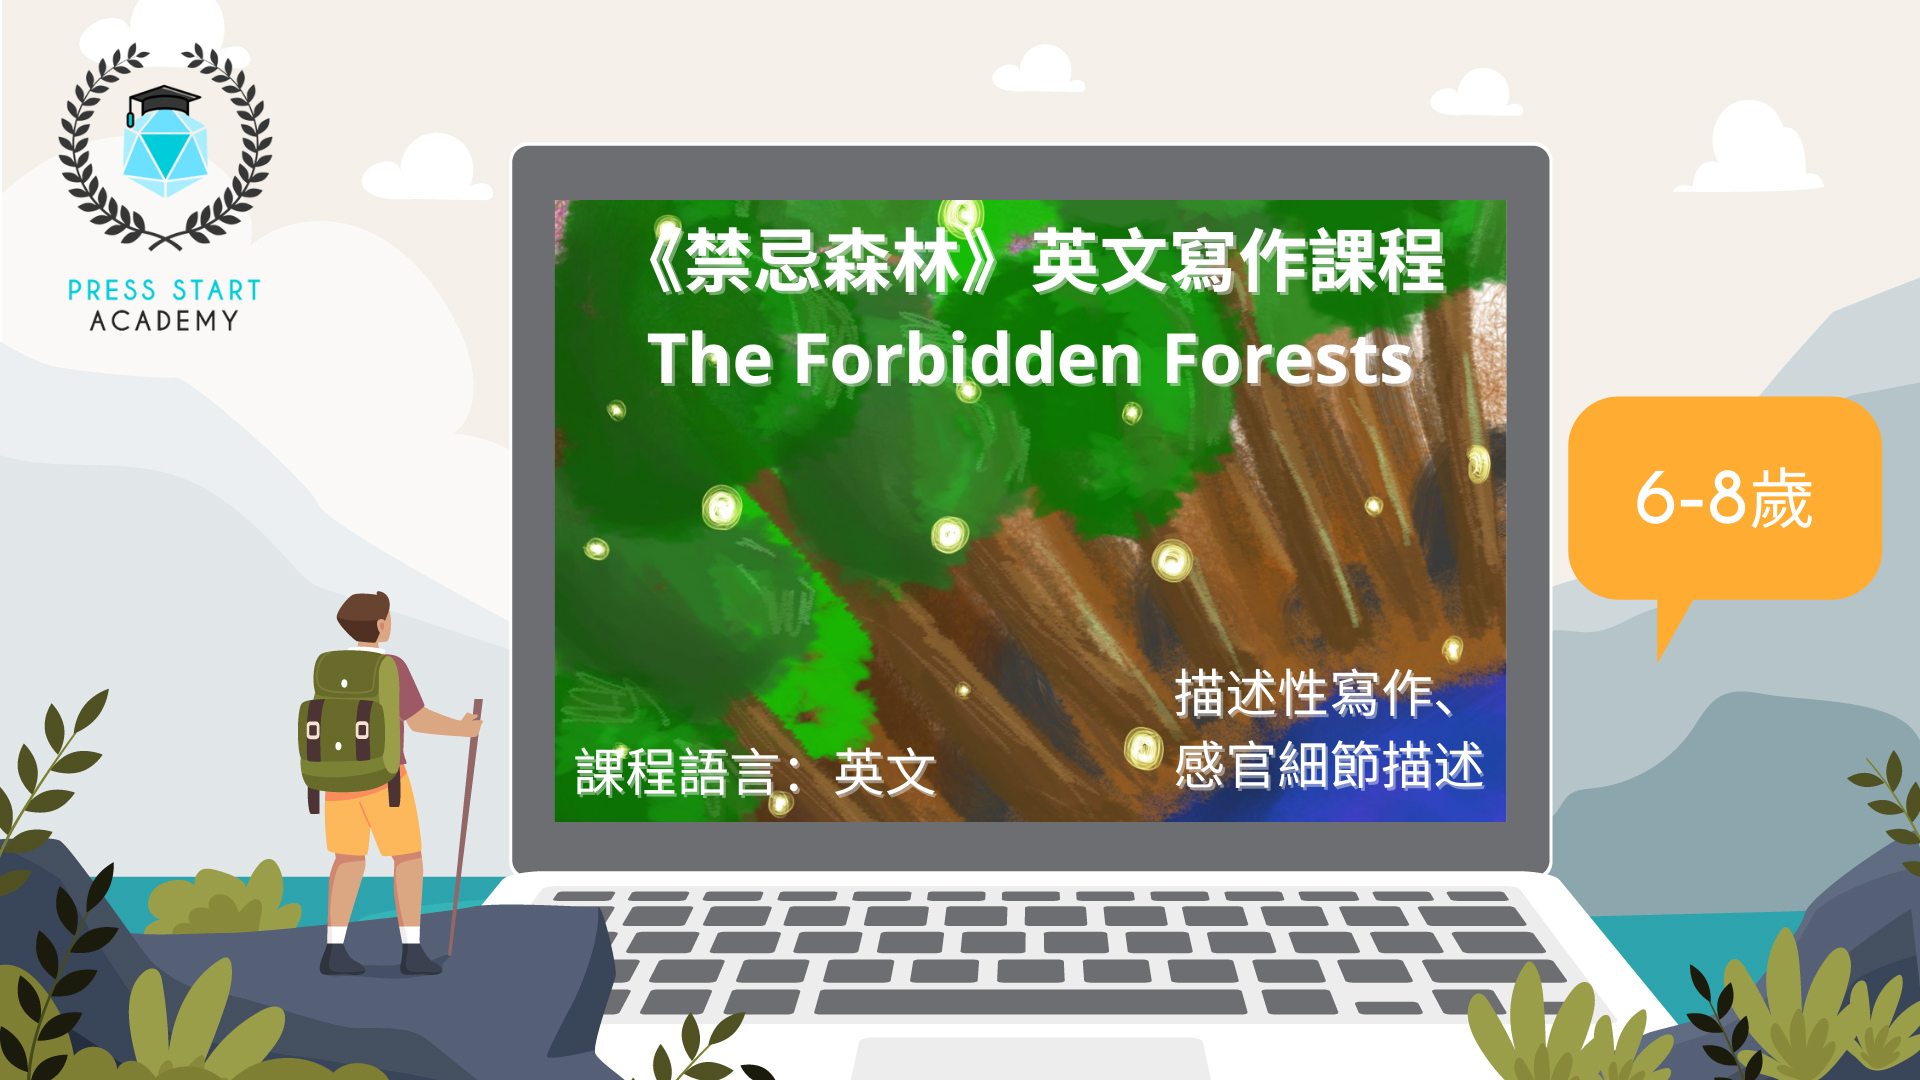 《禁忌森林》線上英文寫作課程 (6-8歲)